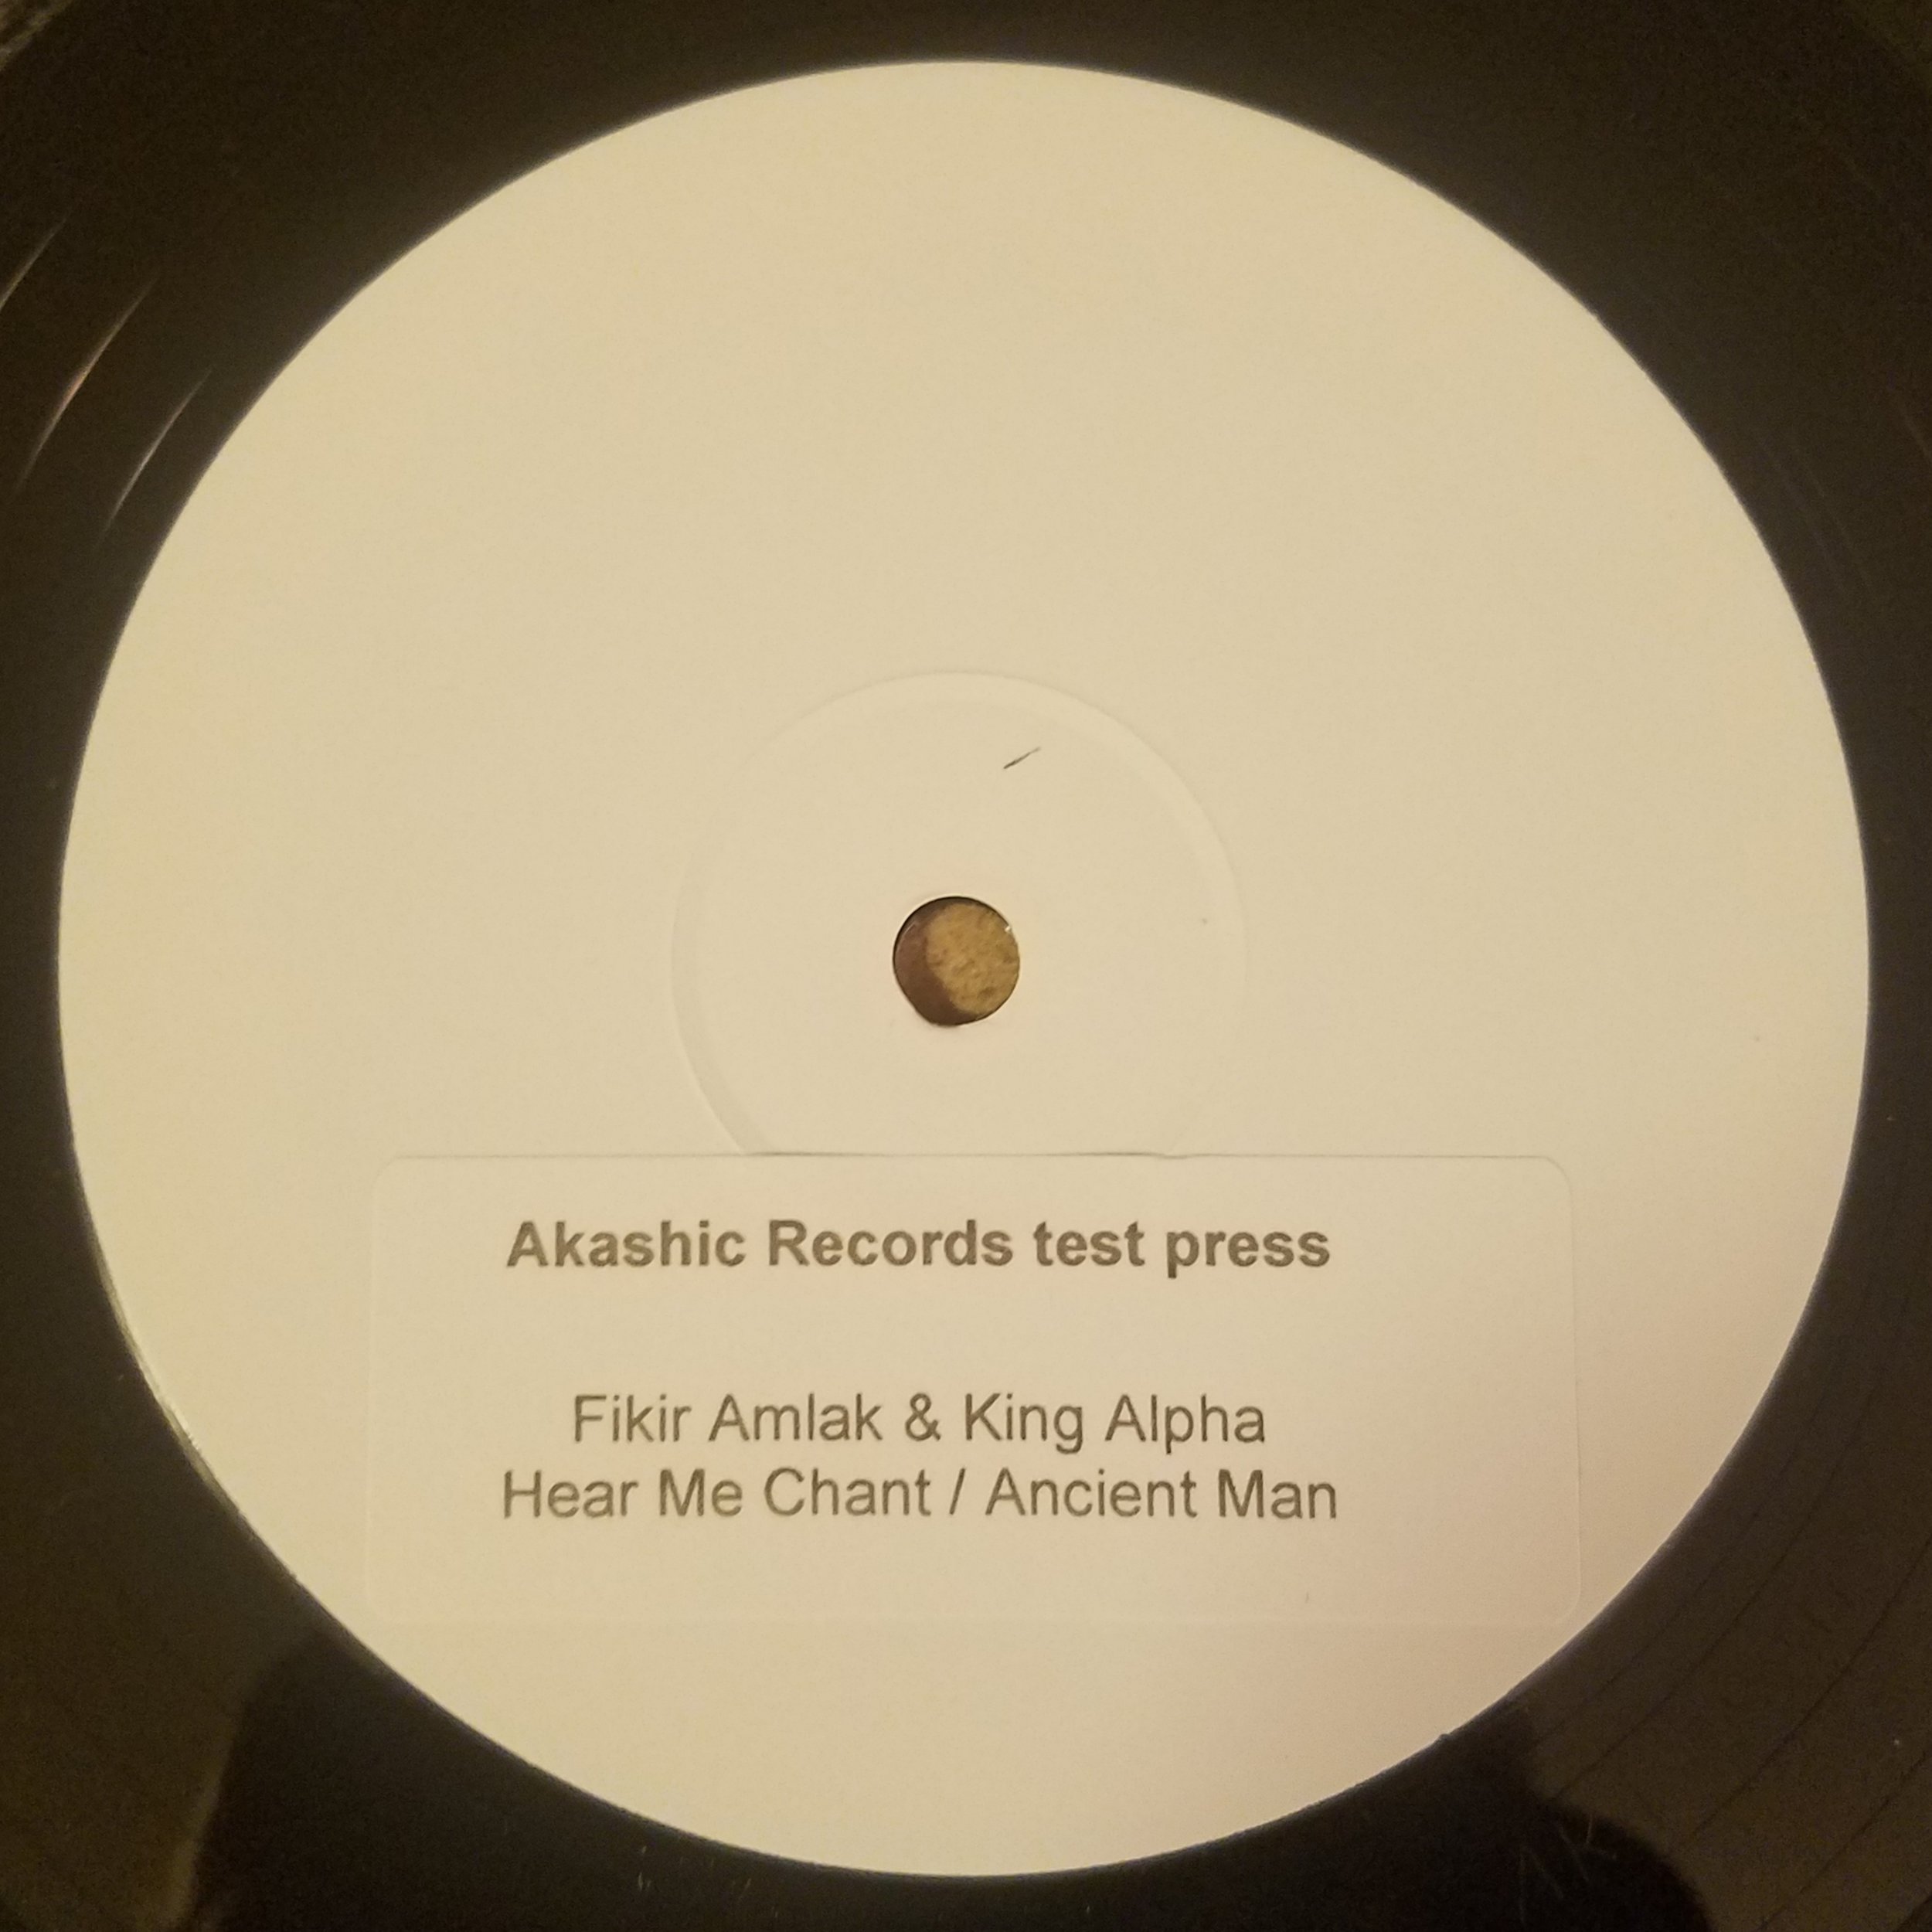 Vinyl 5 — I-ROOTS RECORDS